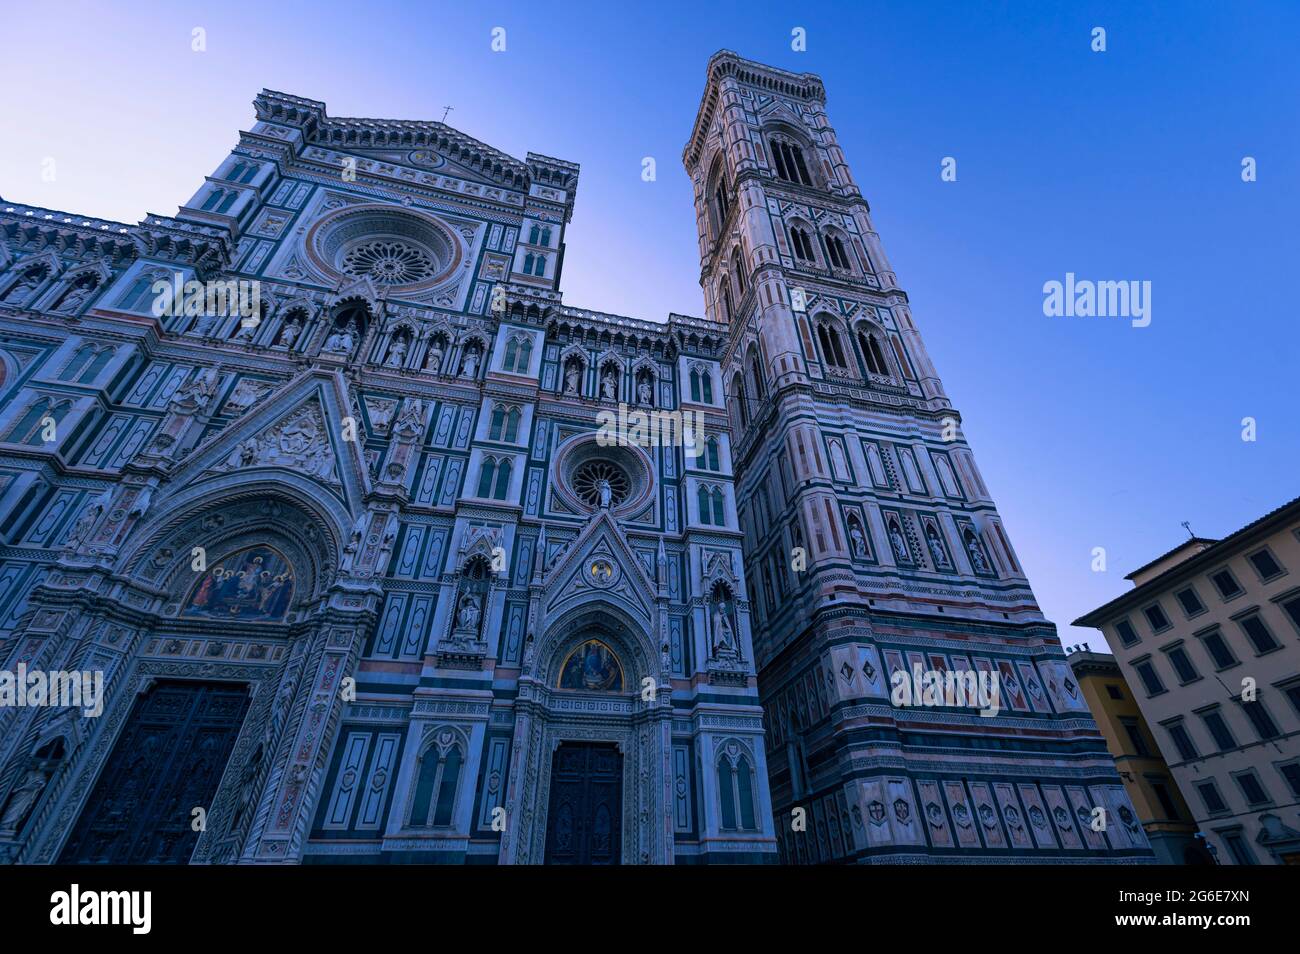 Duomo, Duomo di Firenze. Duomo Santa Maria del Fiore e la cupola del Brunelleschi, Toscana, Itay. Ora blu al mattino, nessuna gente Foto Stock